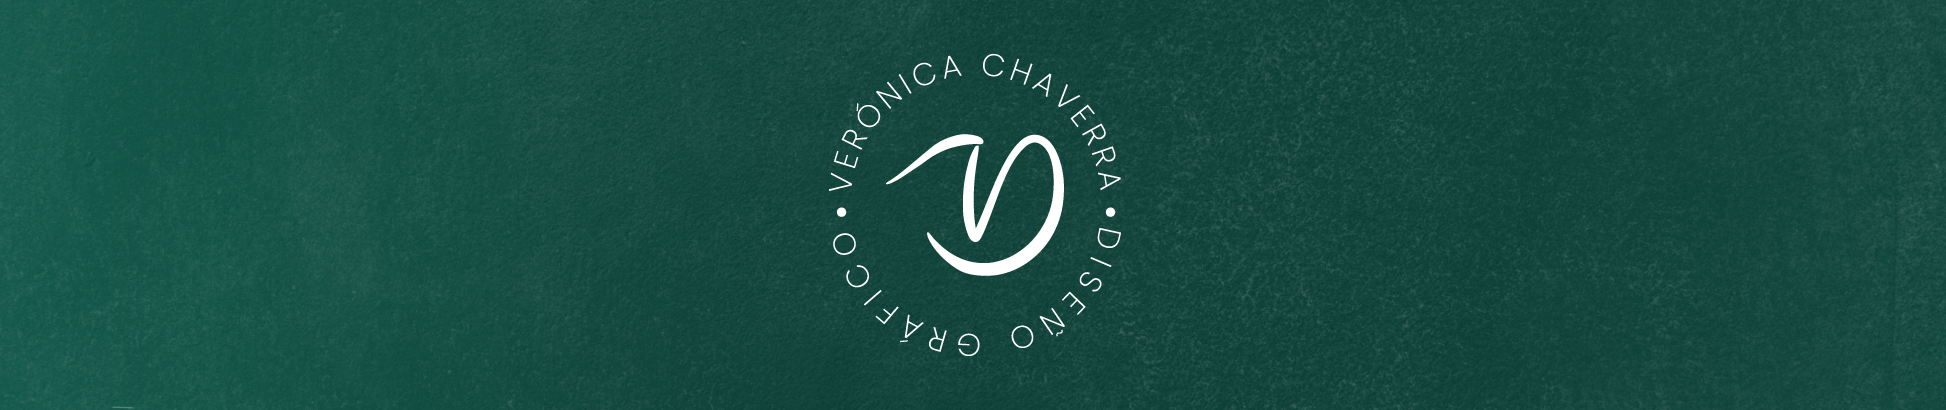 Veronica Chaverra Rodríguez's profile banner